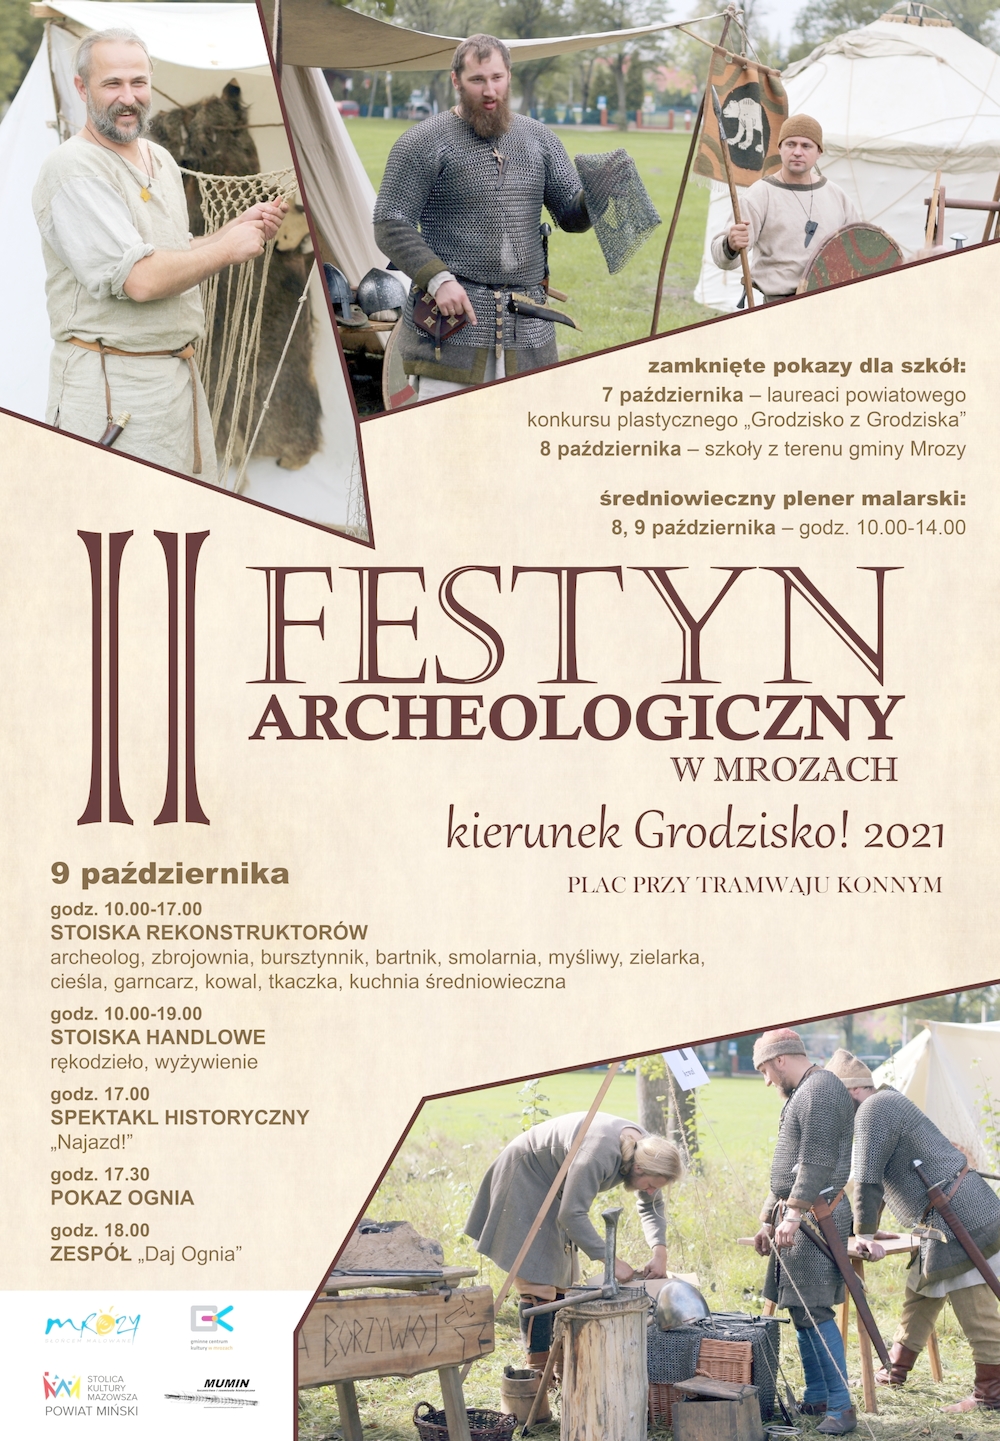 II Festyn Archeologiczny w Mrozach - "Kierunek Grodzisko!"